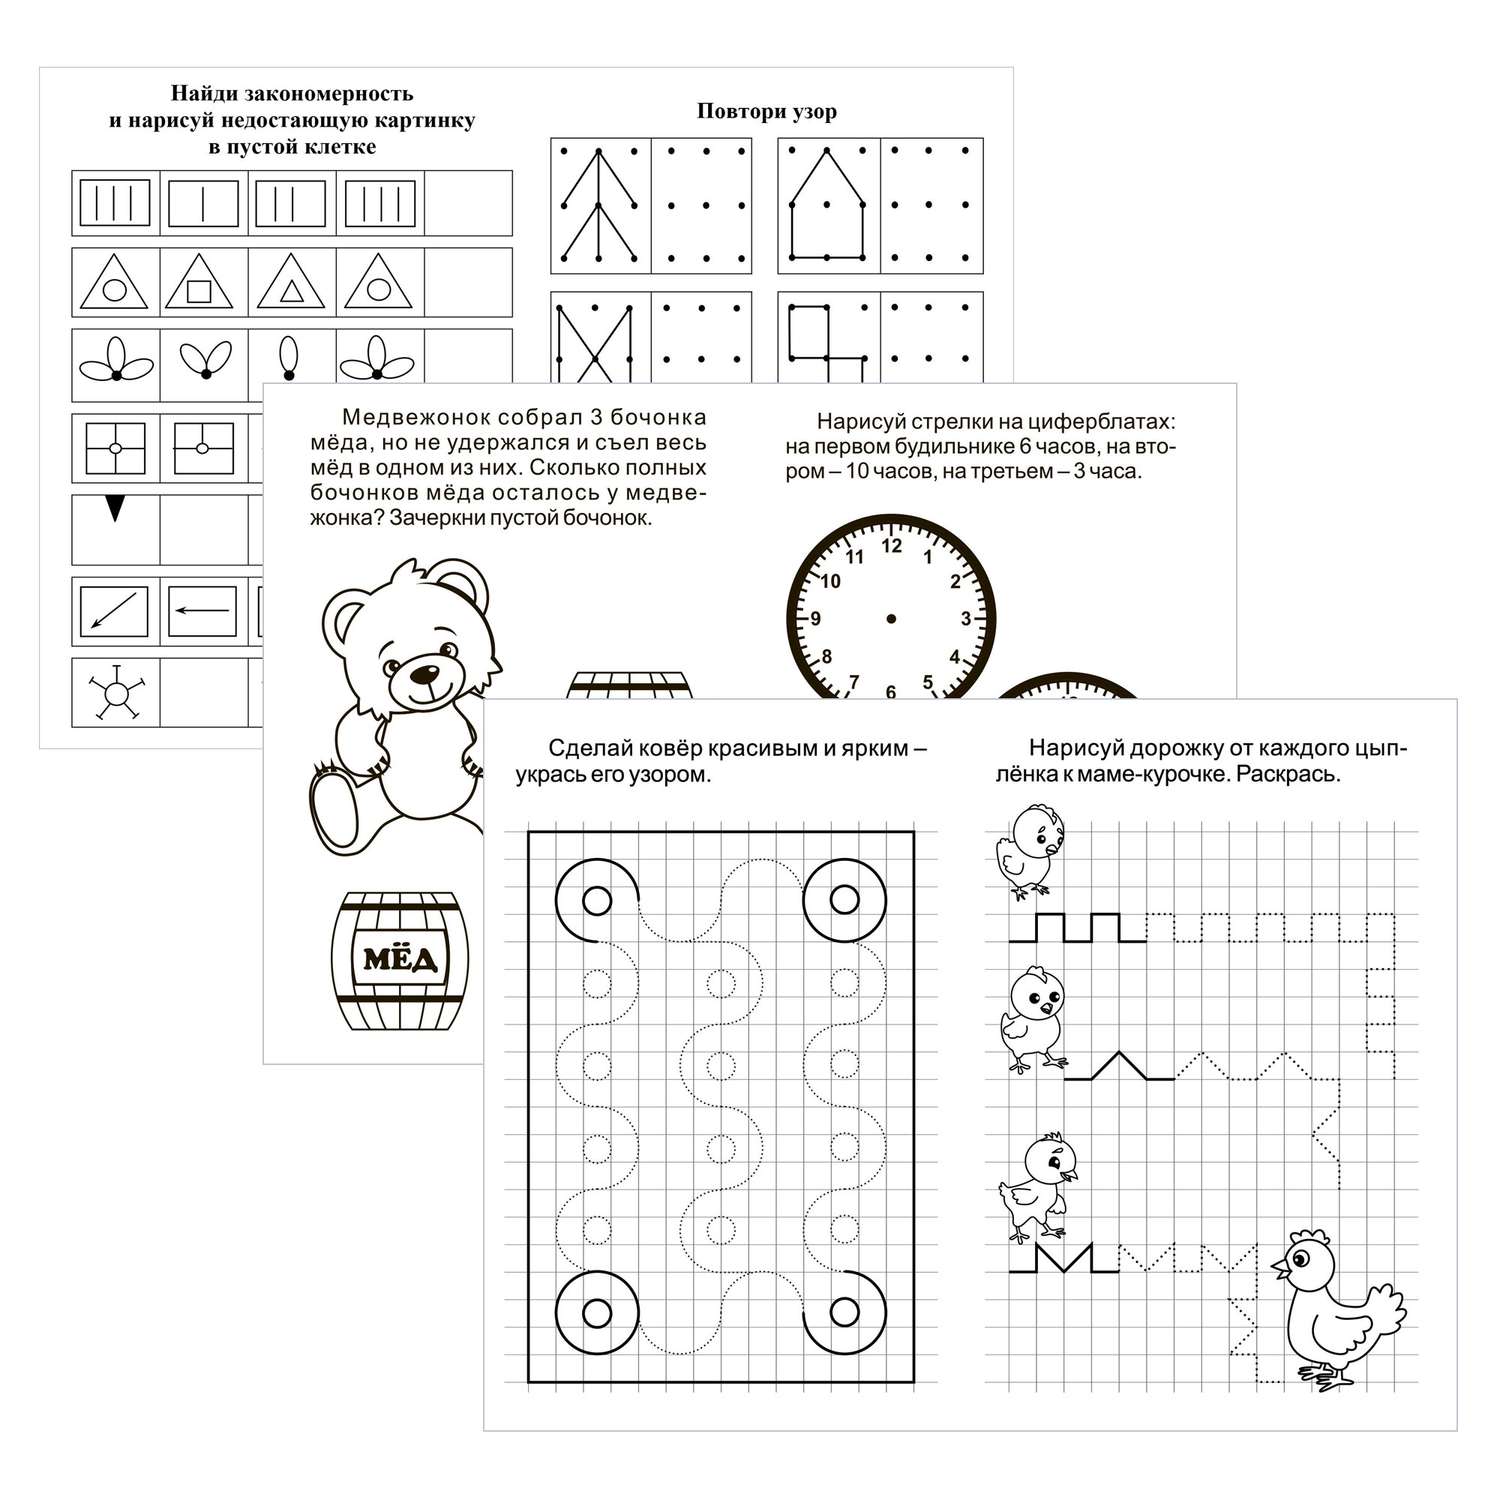 Обучающее пособие Учитель IQ-блокноты для детей от 5 до 7 лет Логика Графические ребусы Математический блиц - фото 2